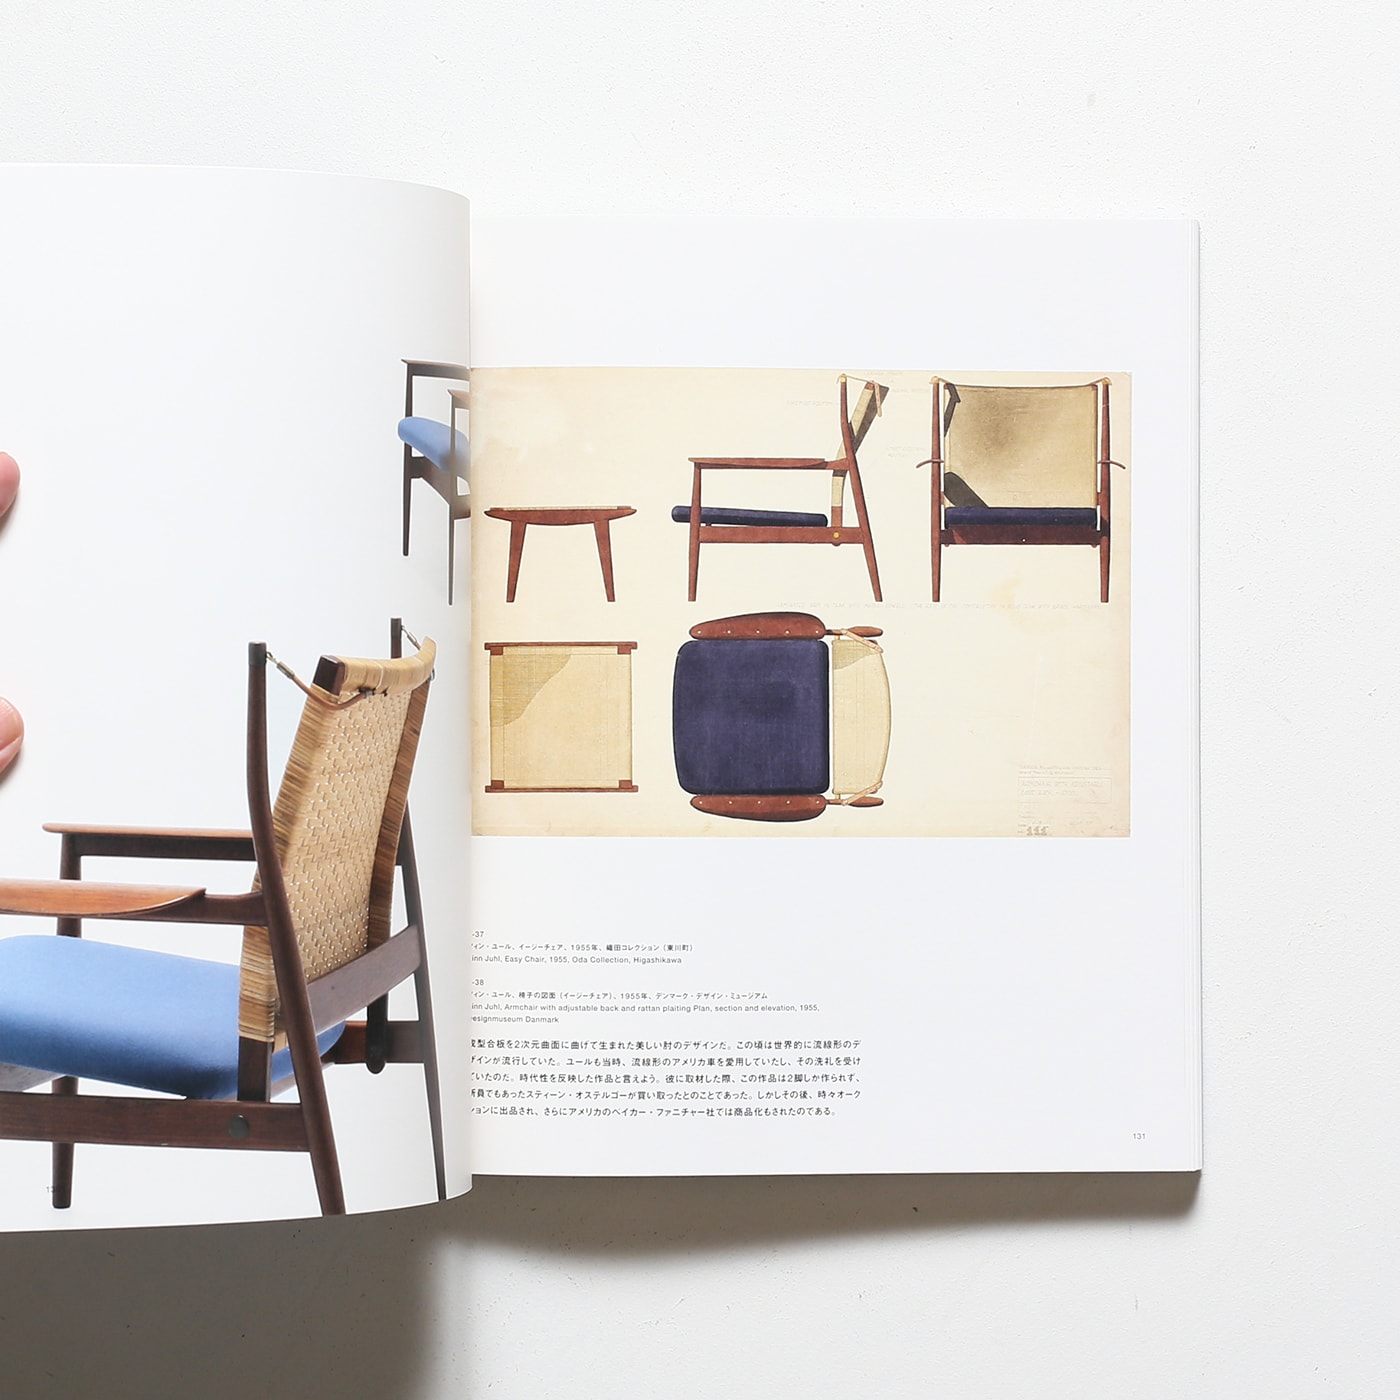 フィン・ユールとデンマークの椅子展 | 東京都美術館 | nostos books 